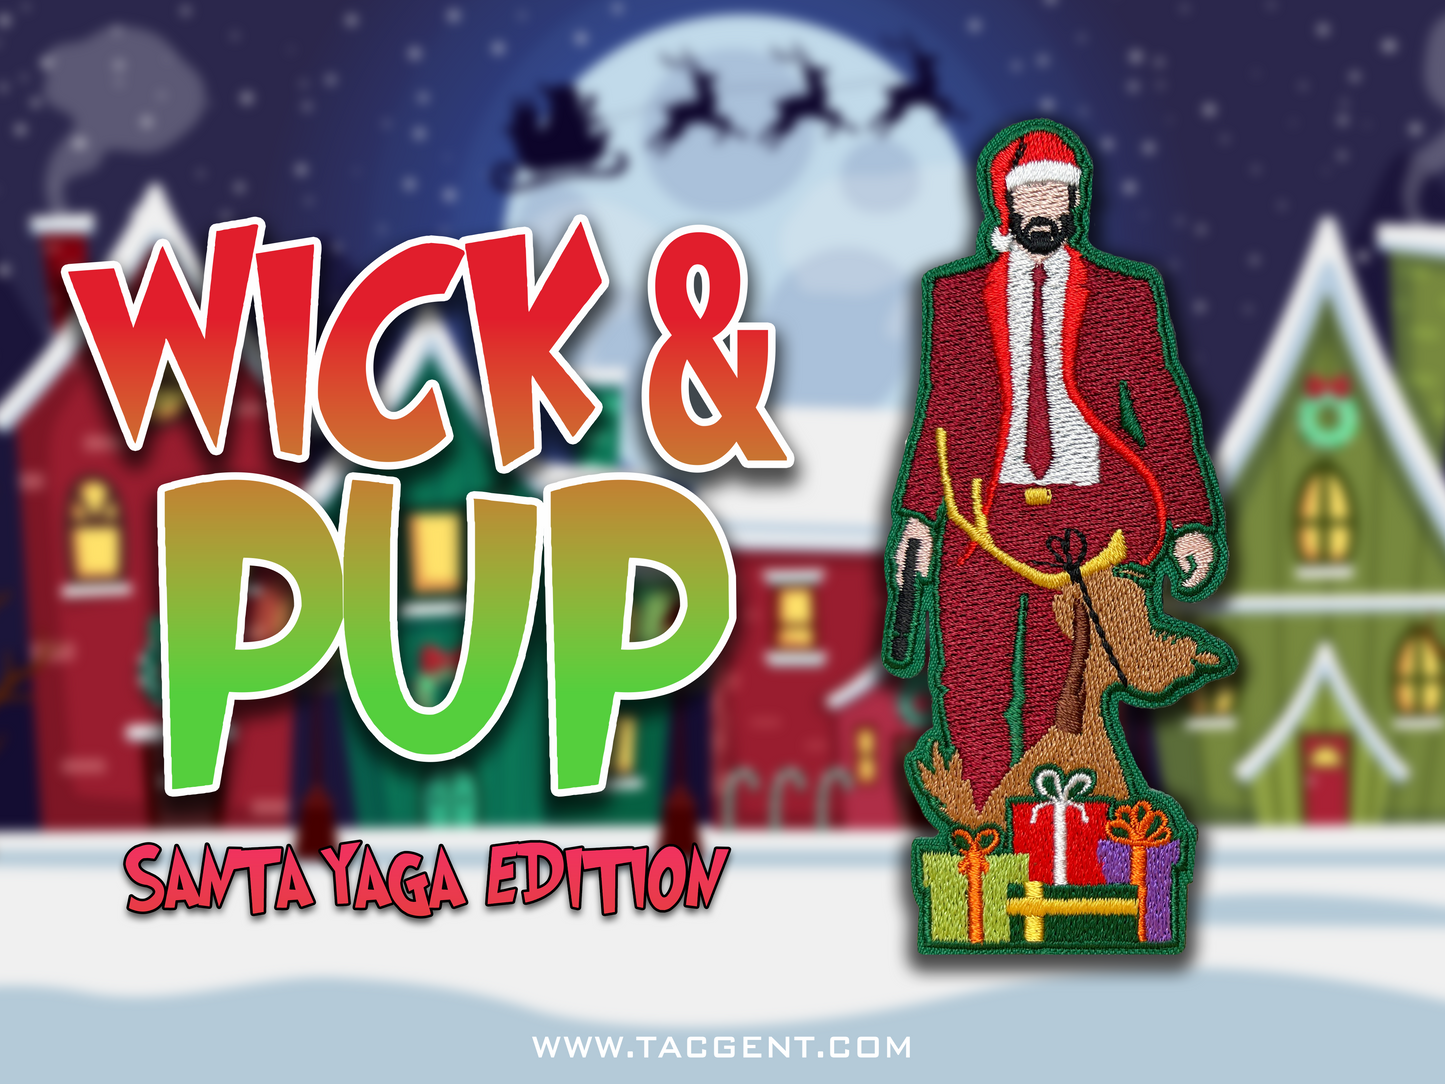 Wick & Pup: Santa Yaga Edition